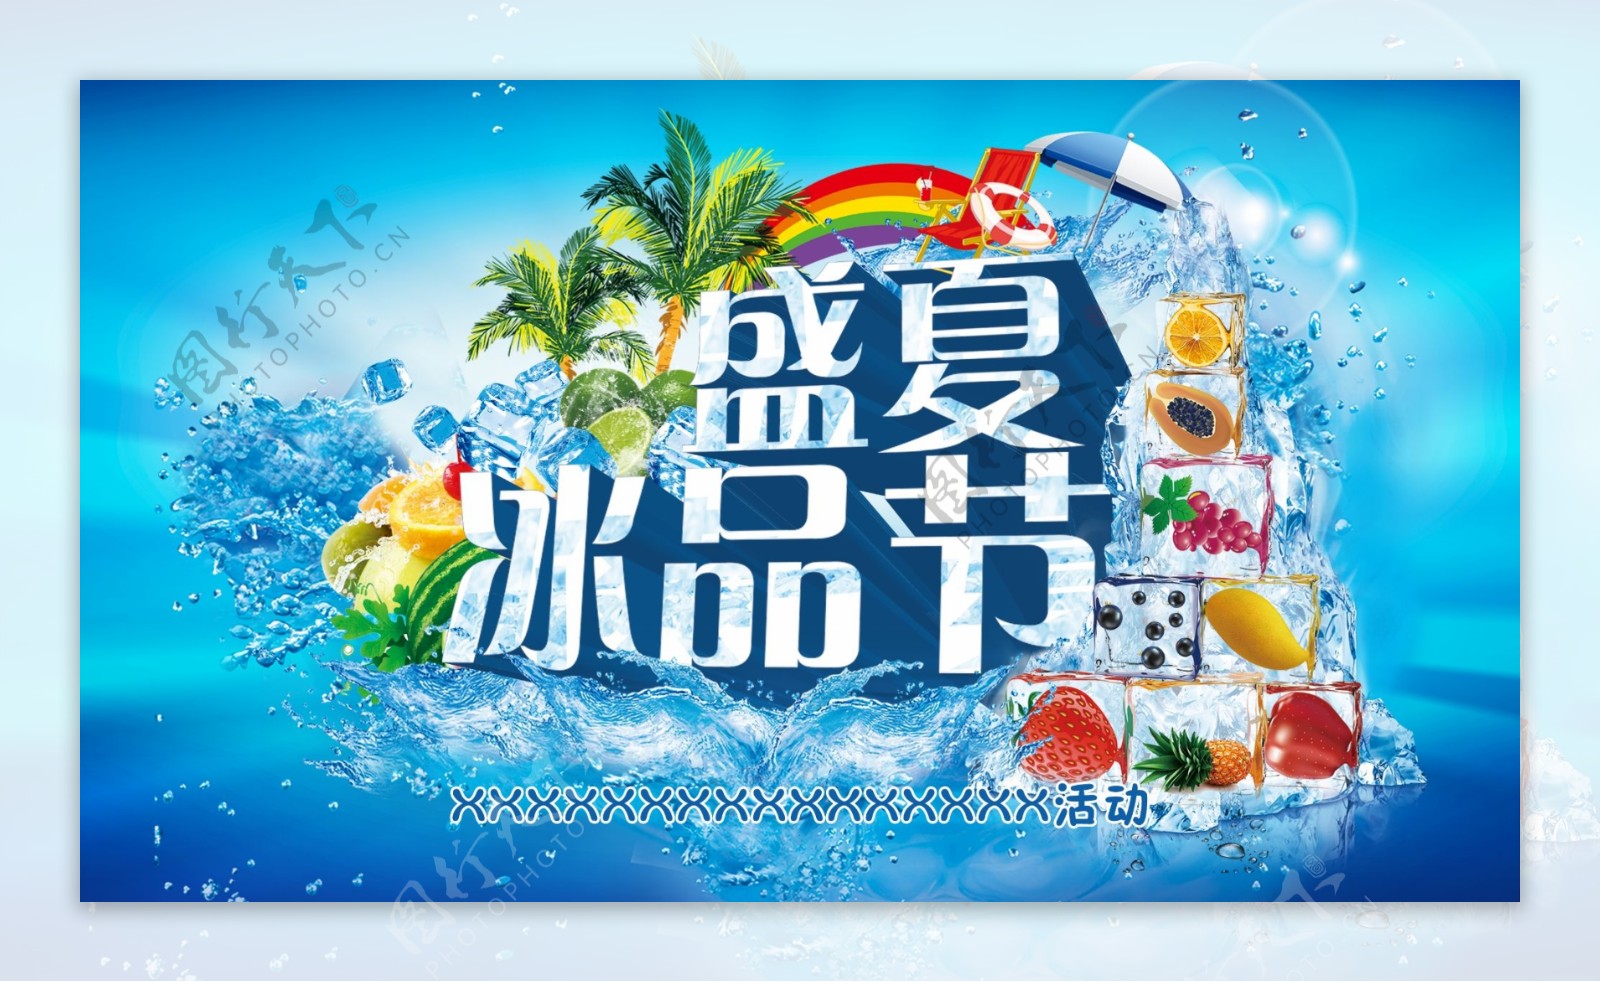 盛夏冰品节冷饮促销海报设计PSD素材